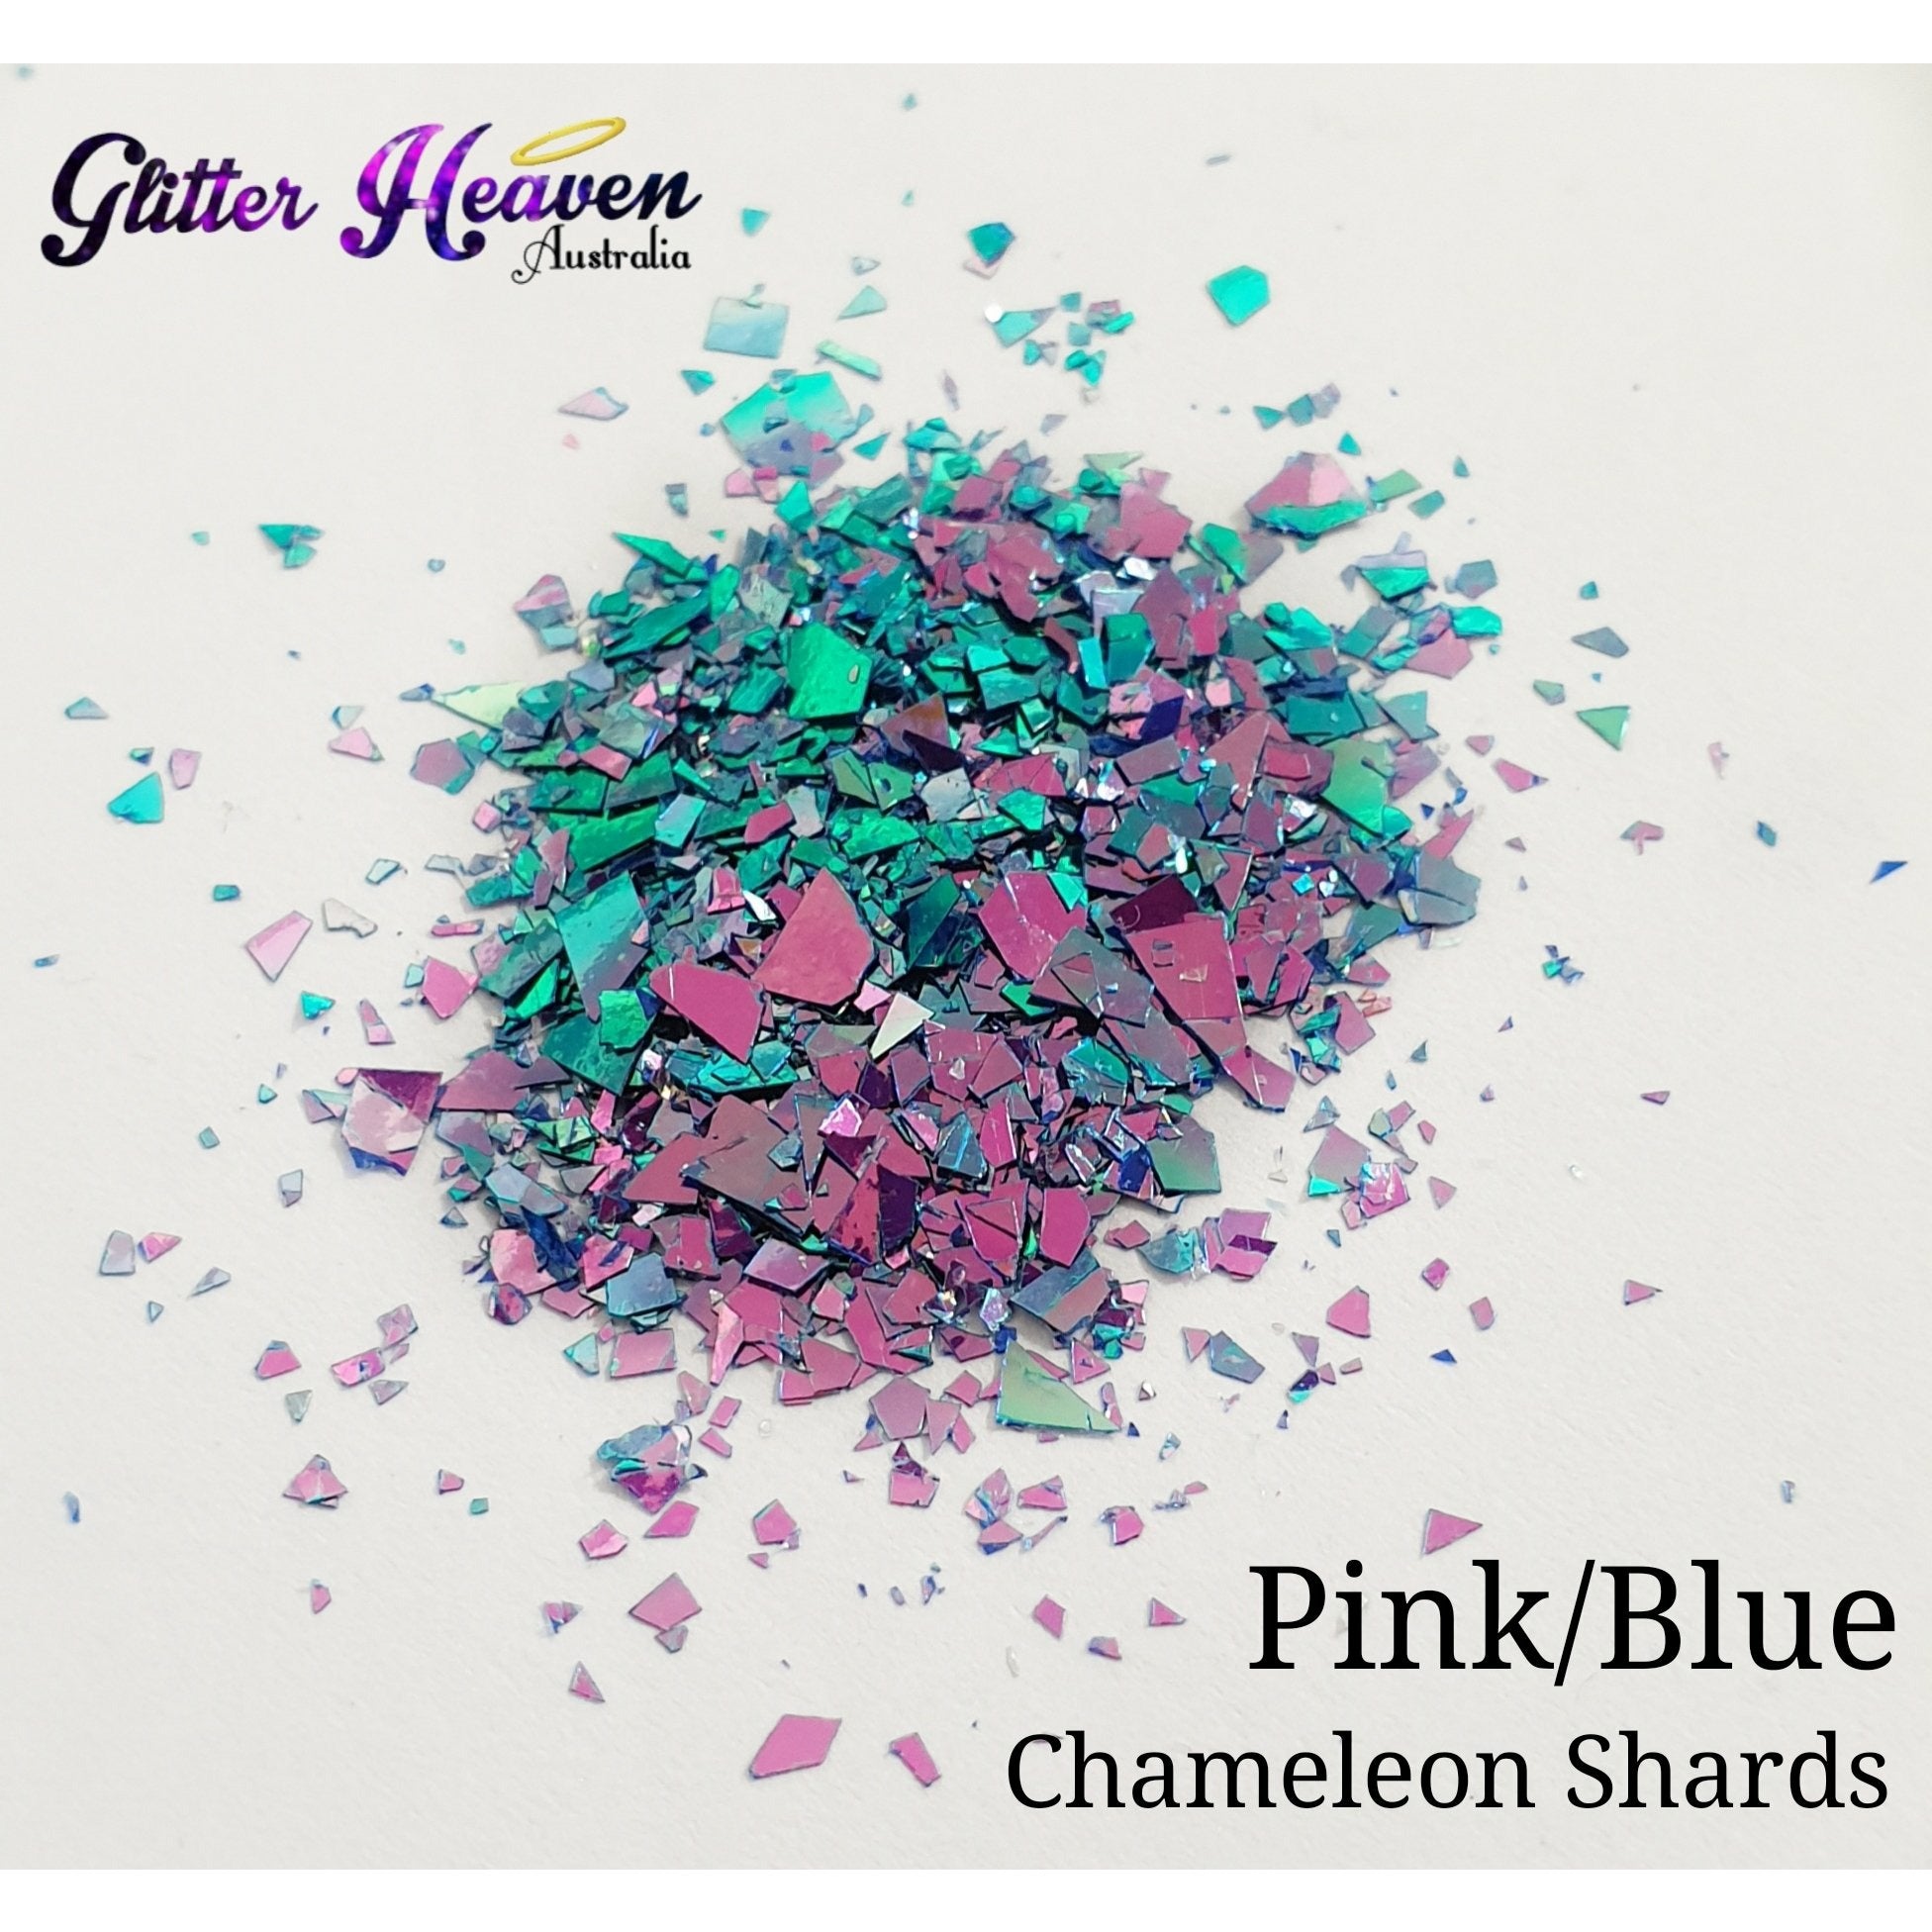 Pink/Blue Chameleon Shards